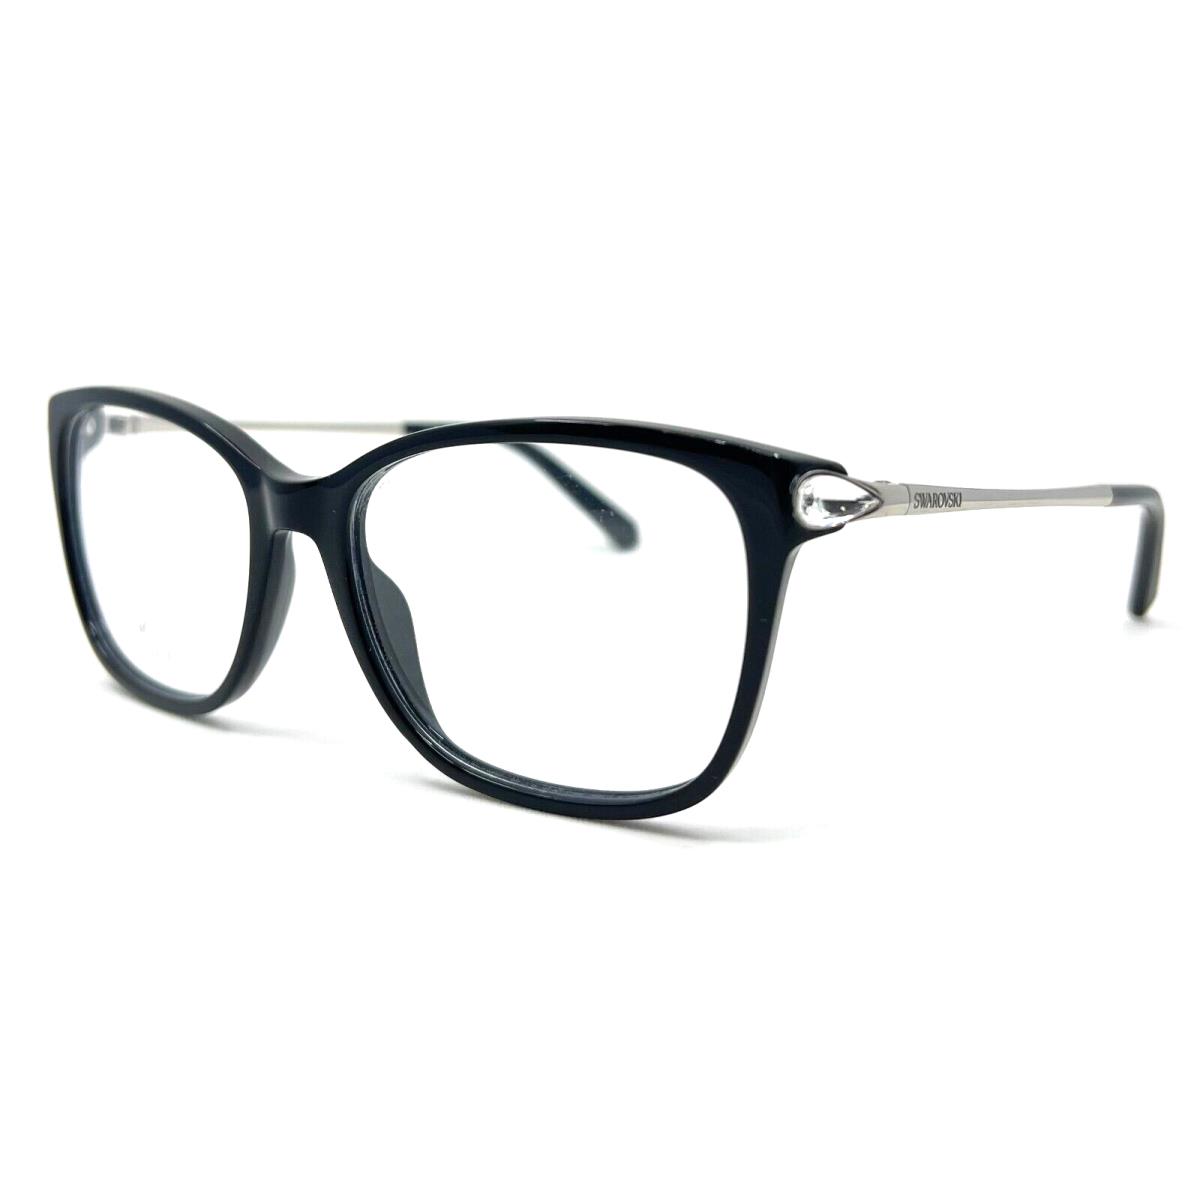 Swarovski - SK5350 001 53/16/135 - Black - Eyeglasses Case